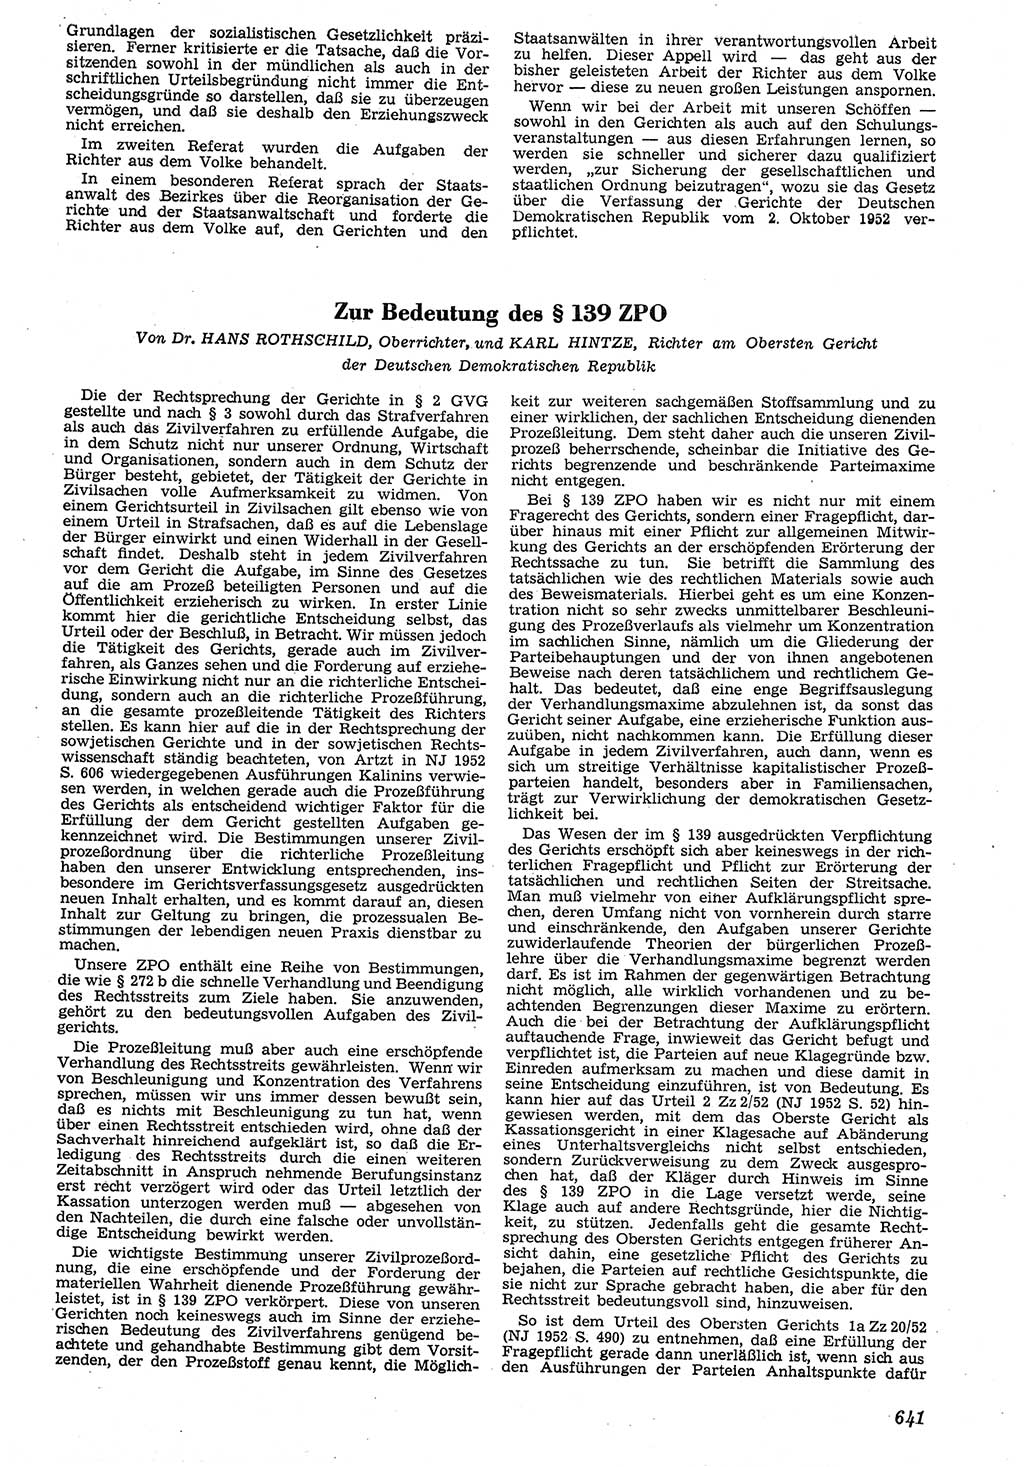 Neue Justiz (NJ), Zeitschrift für Recht und Rechtswissenschaft [Deutsche Demokratische Republik (DDR)], 7. Jahrgang 1953, Seite 641 (NJ DDR 1953, S. 641)